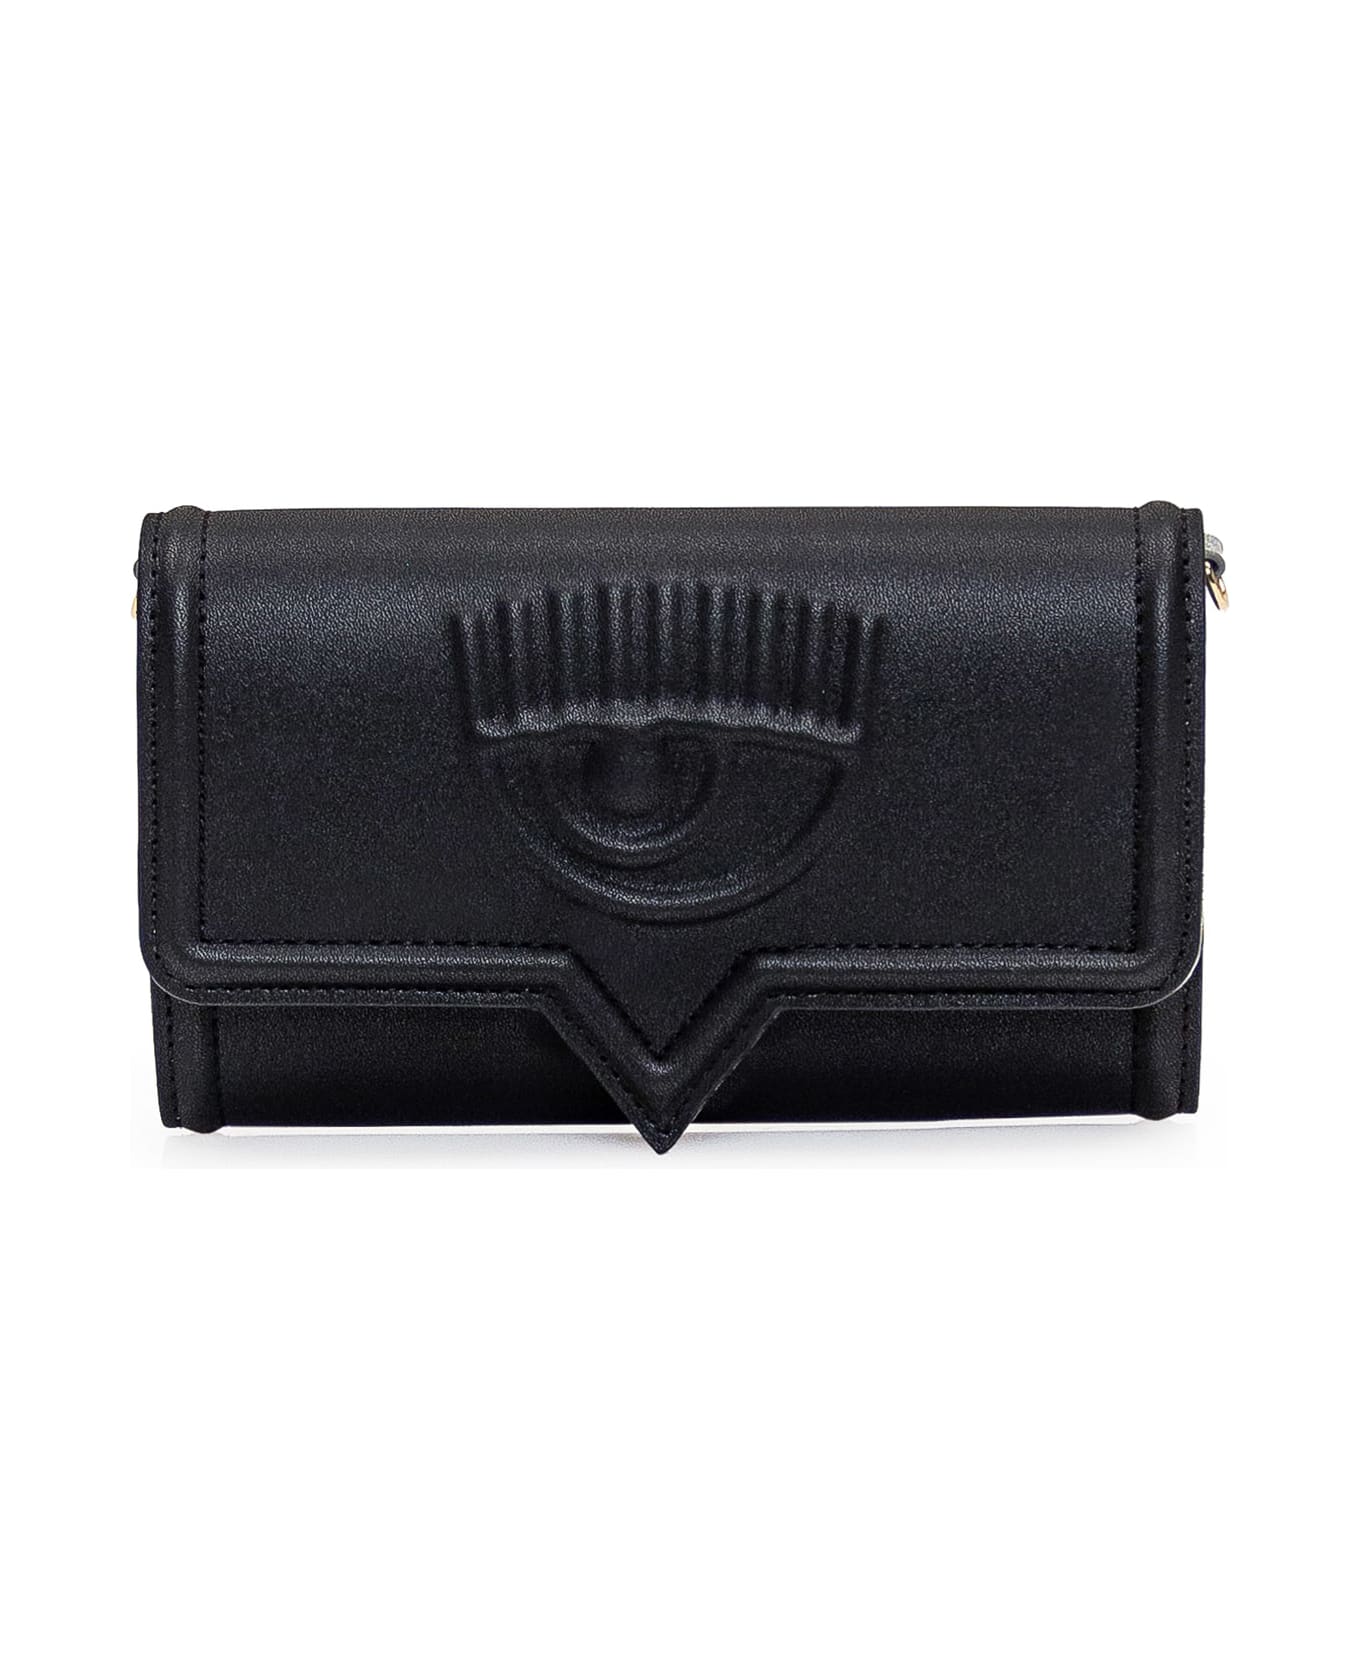 Chiara Ferragni Eyelike Wallet - Black 財布